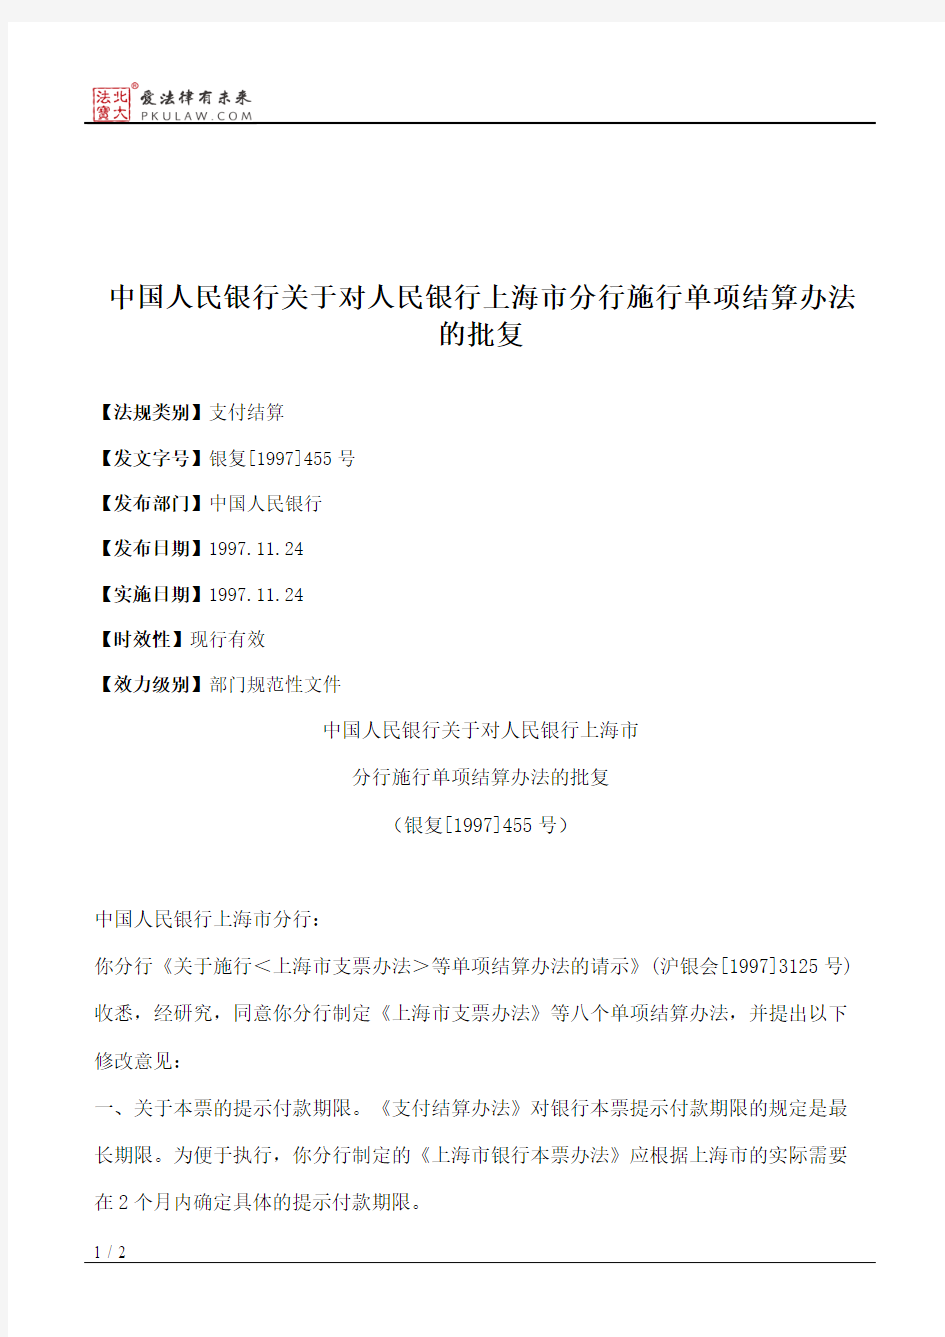 中国人民银行关于对人民银行上海市分行施行单项结算办法的批复